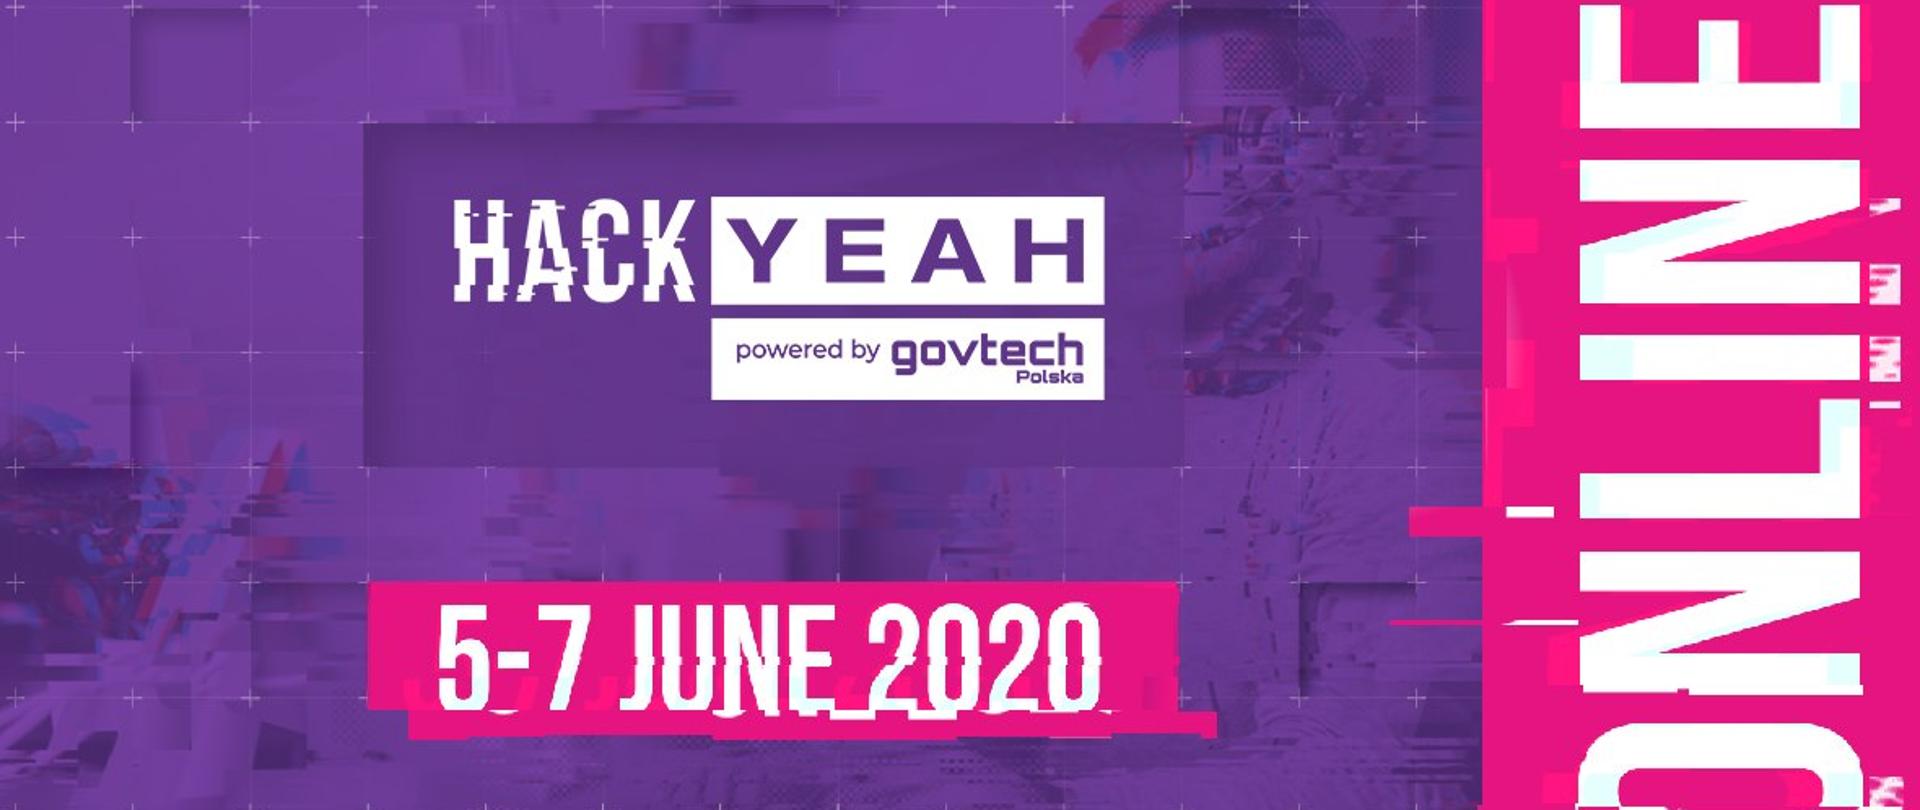 Grafika z fioletowym tłem zapowiadająca hackathon online HackYeah w dniu 5-7 czerwca 2020 roku